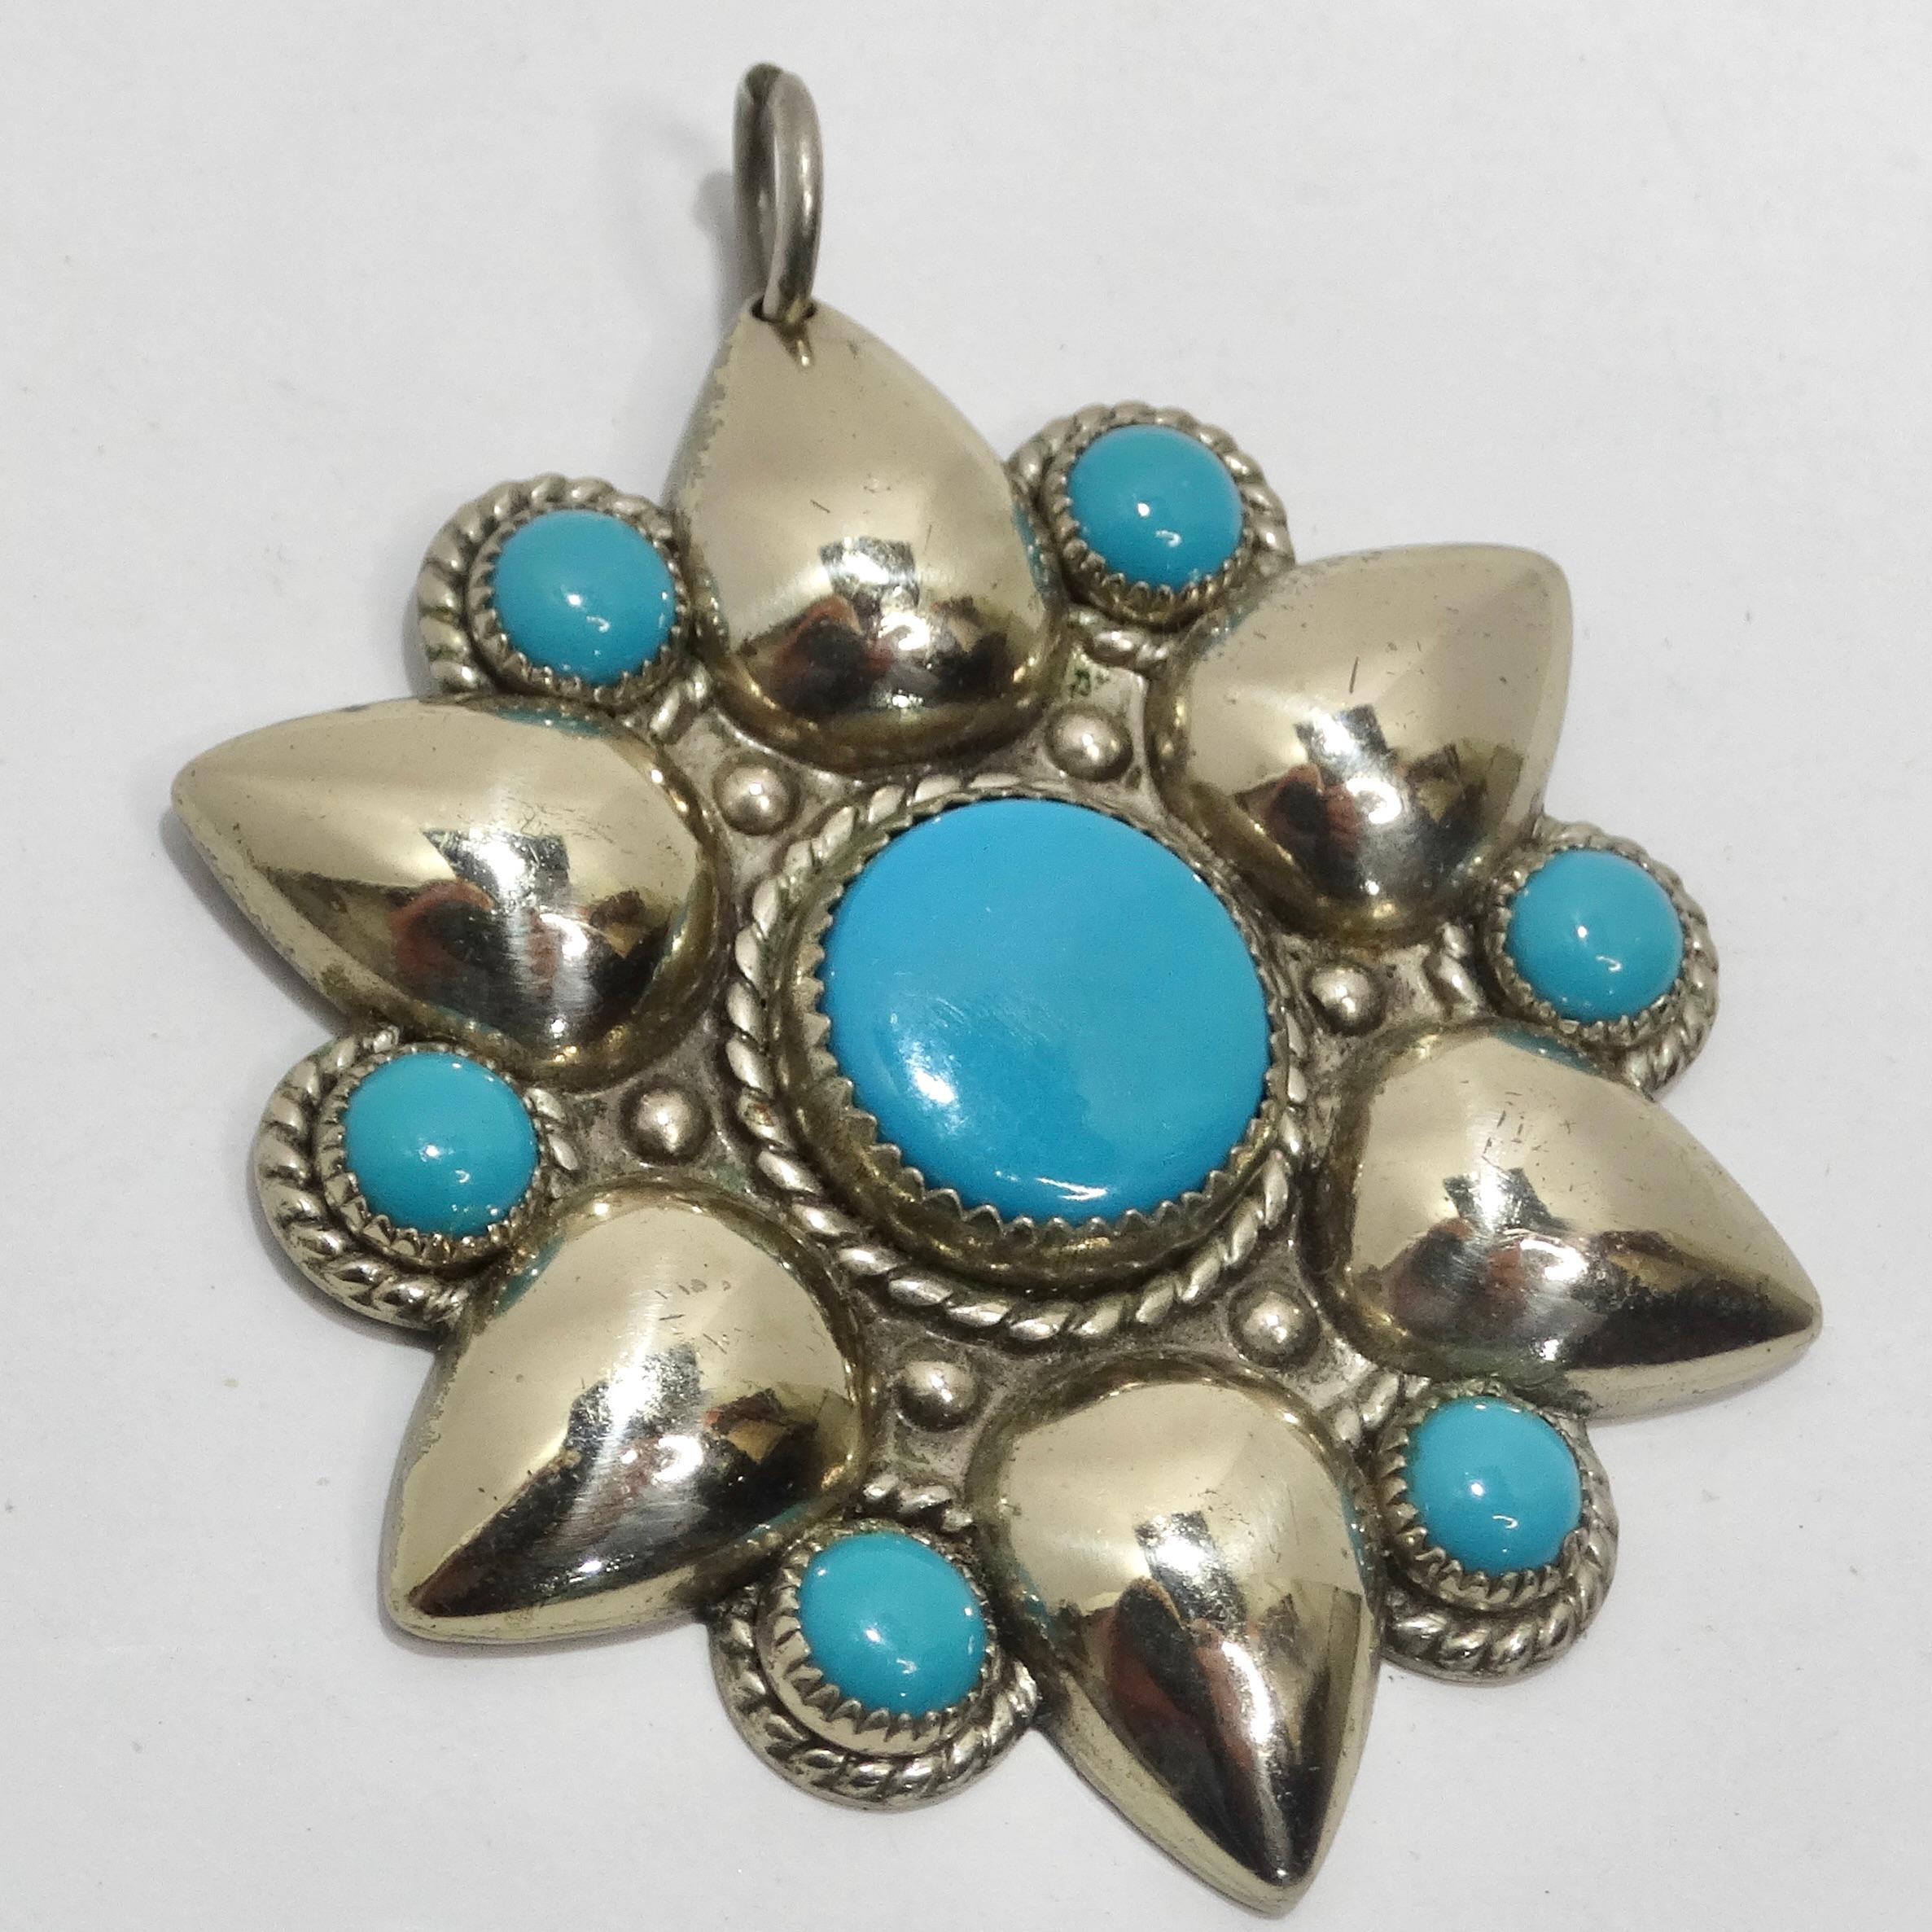 Voici l'exquis pendentif fleur en argent et turquoise des années 1960, un bijou intemporel qui incarne la beauté de l'artisanat amérindien. Ce pendentif n'est pas seulement un accessoire, c'est une œuvre d'art portable qui raconte une histoire de